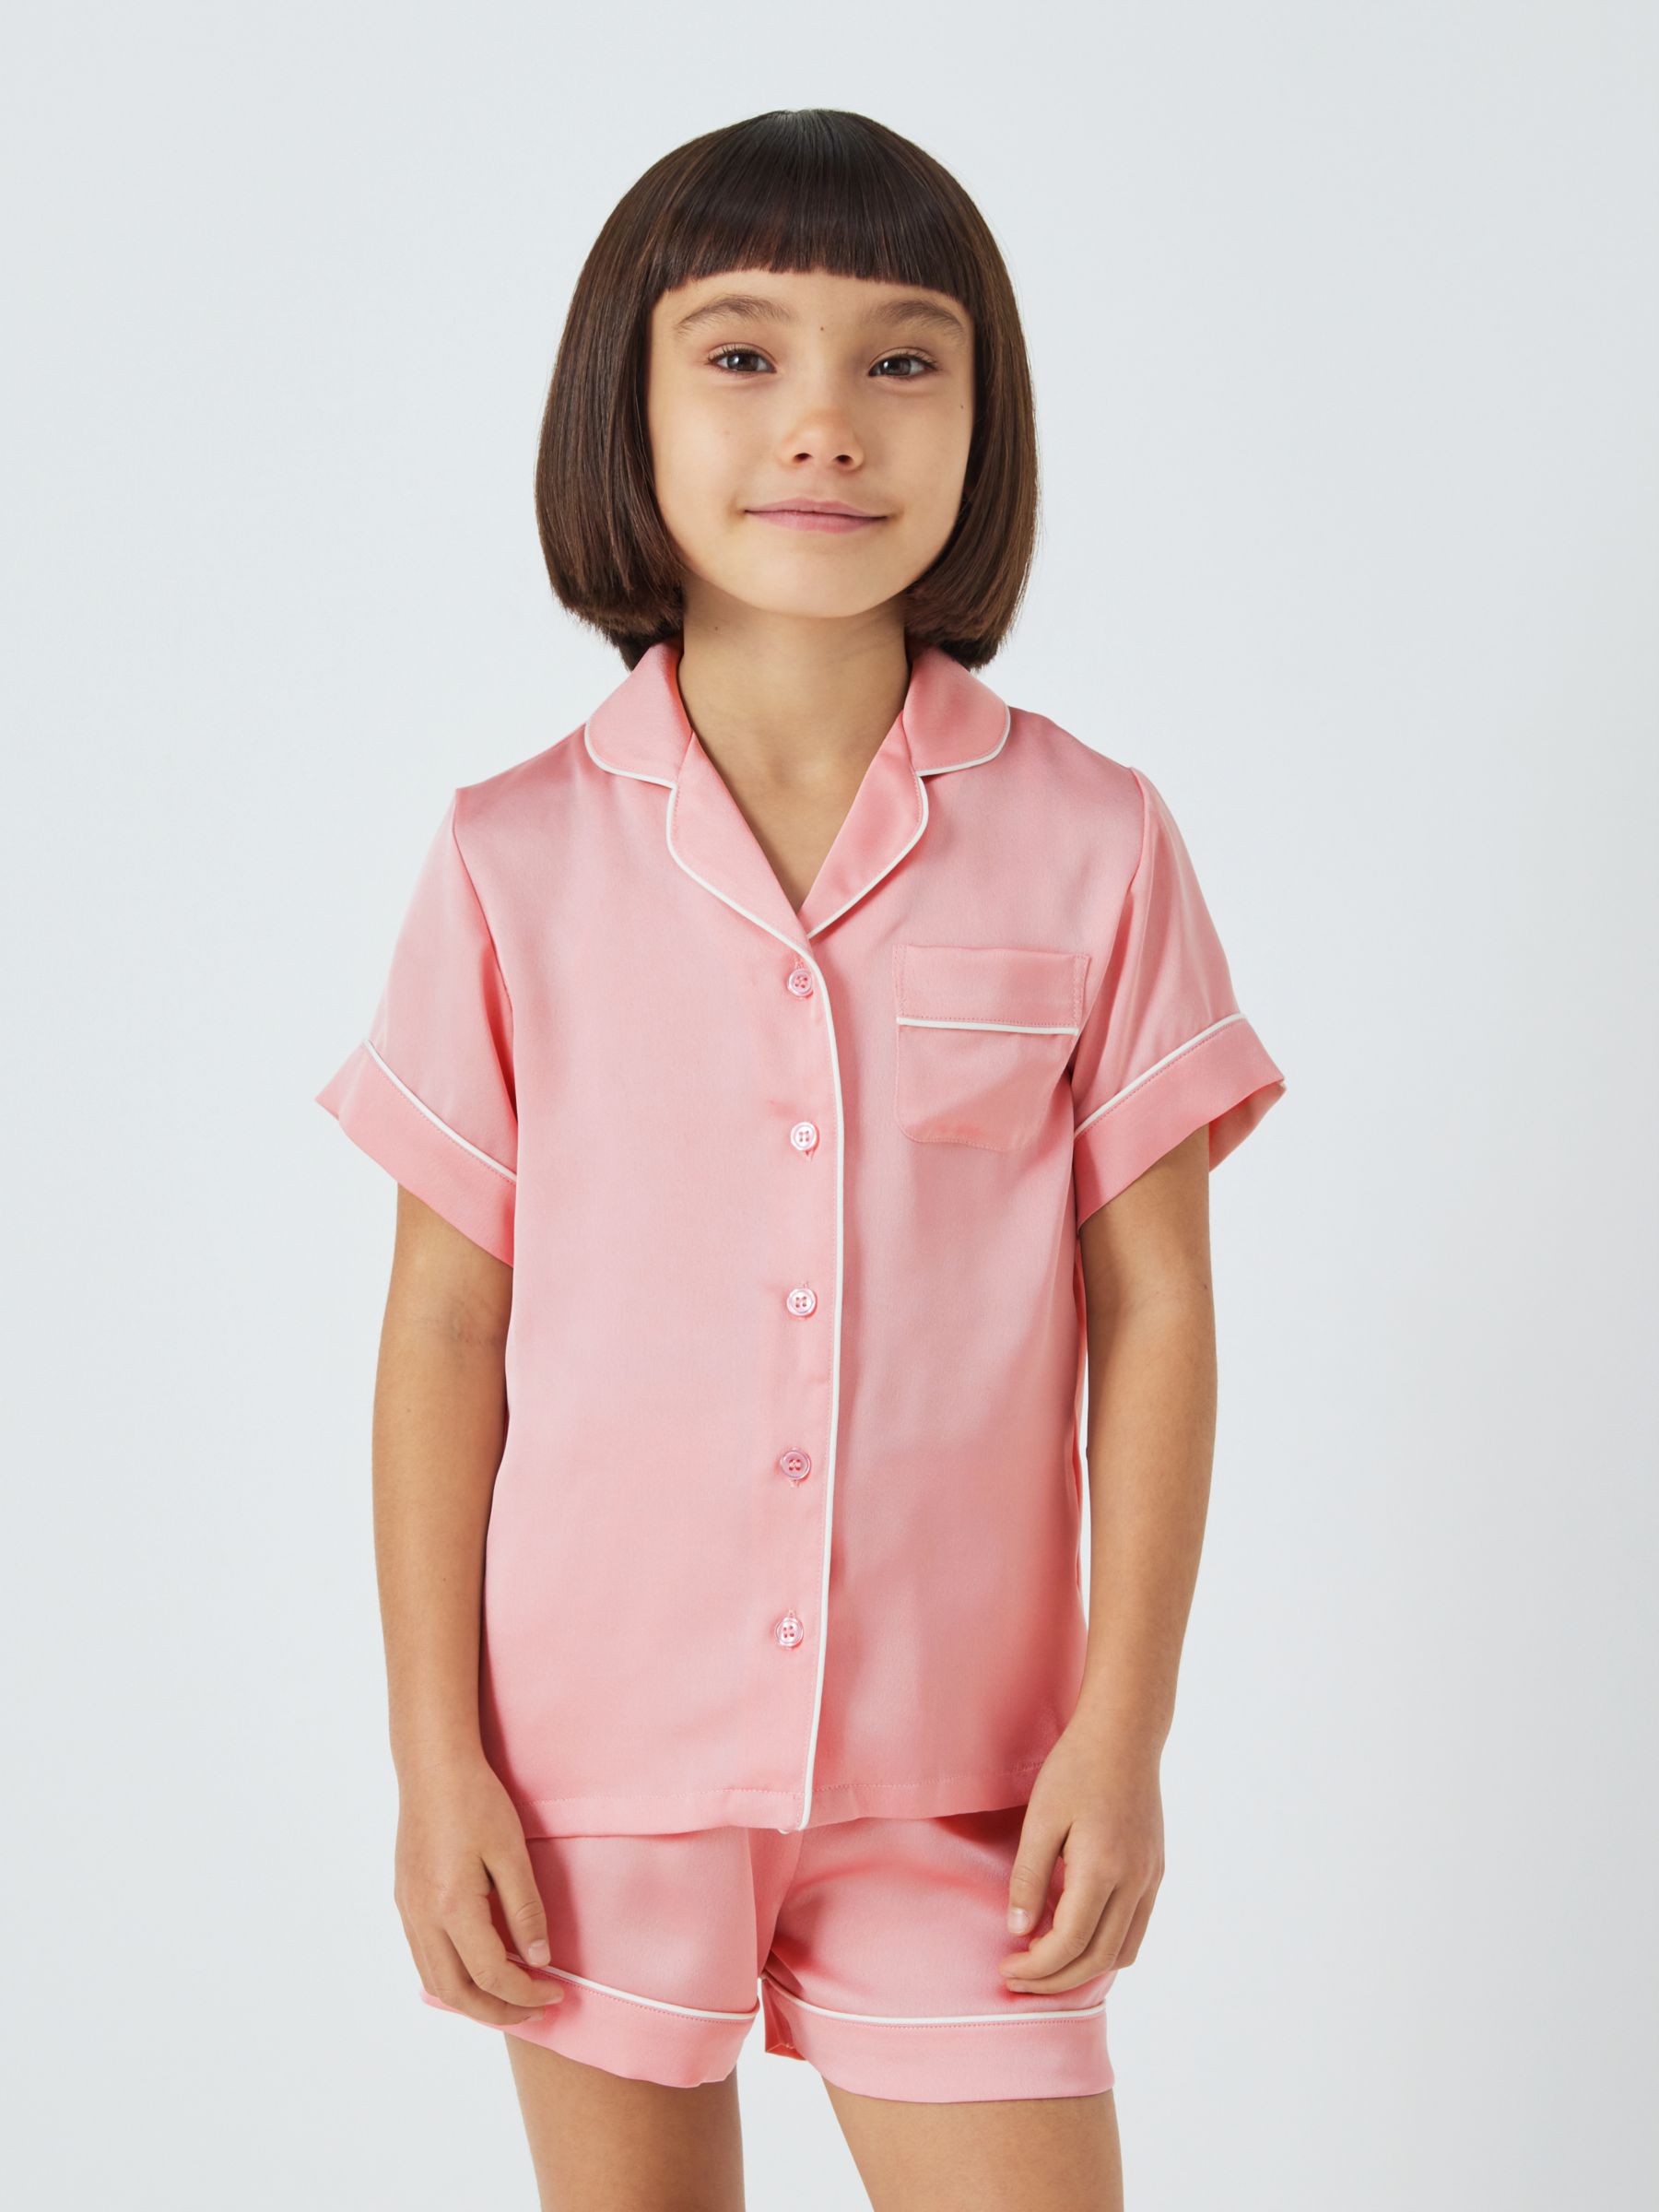 John Lewis Kids' Satin Shortie Pyjamas, Pink, 13 years